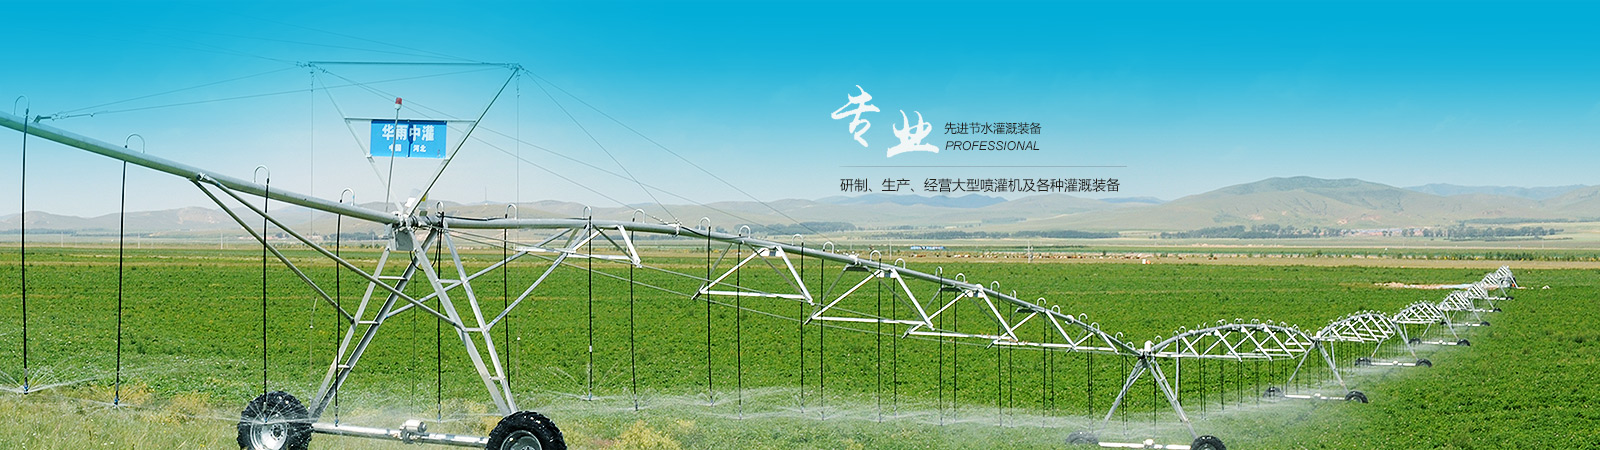 2018京津冀 石家庄）节水灌溉暨设施农业 技术设备展览会